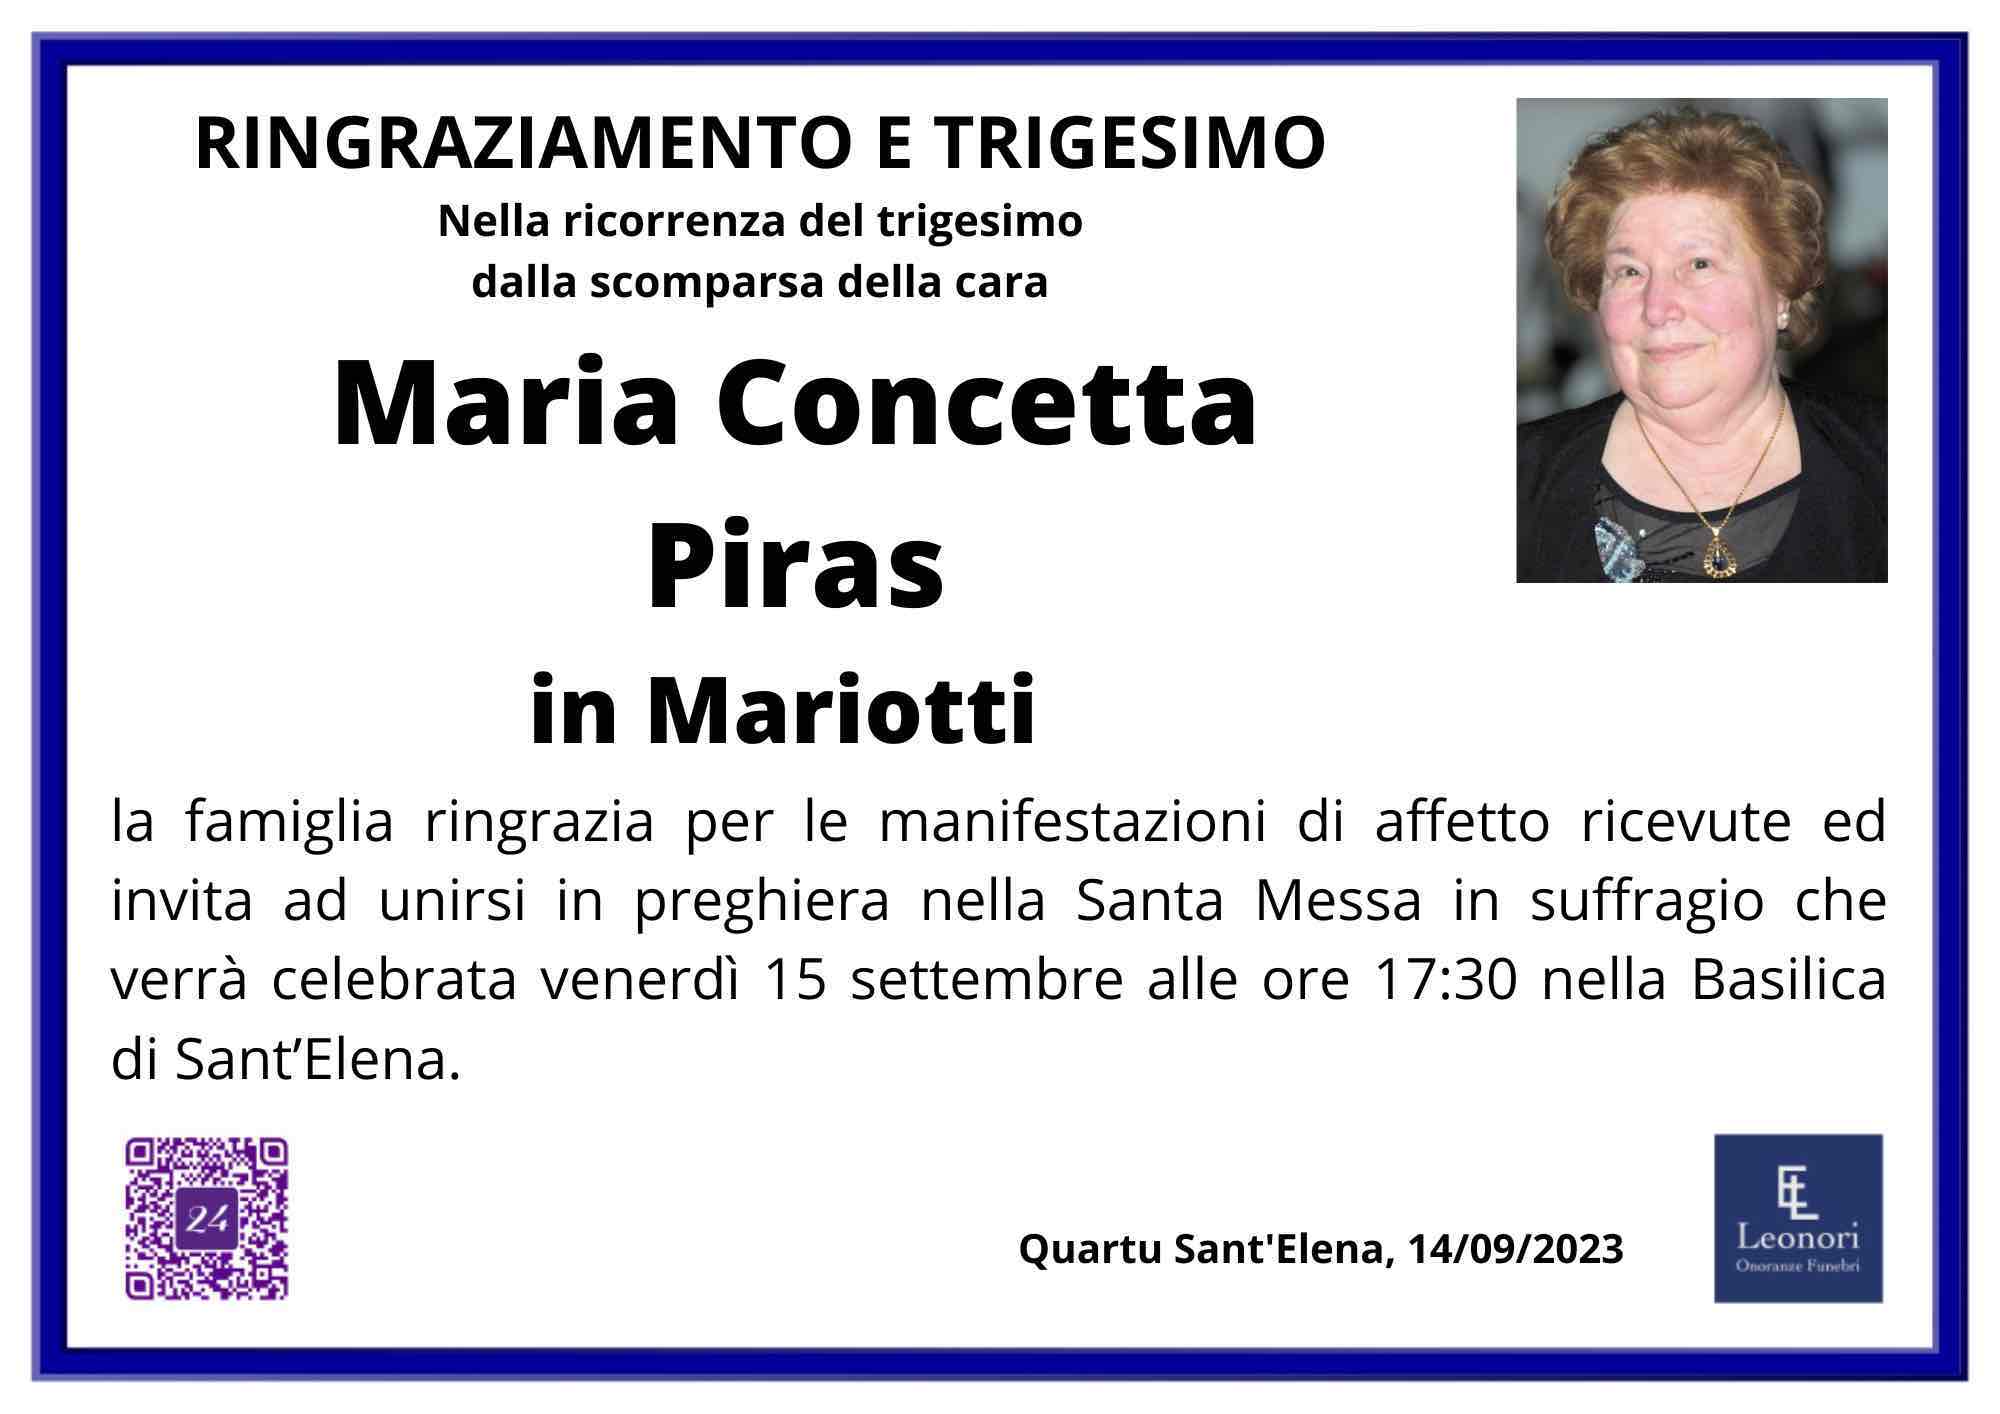 Maria Concetta Piras